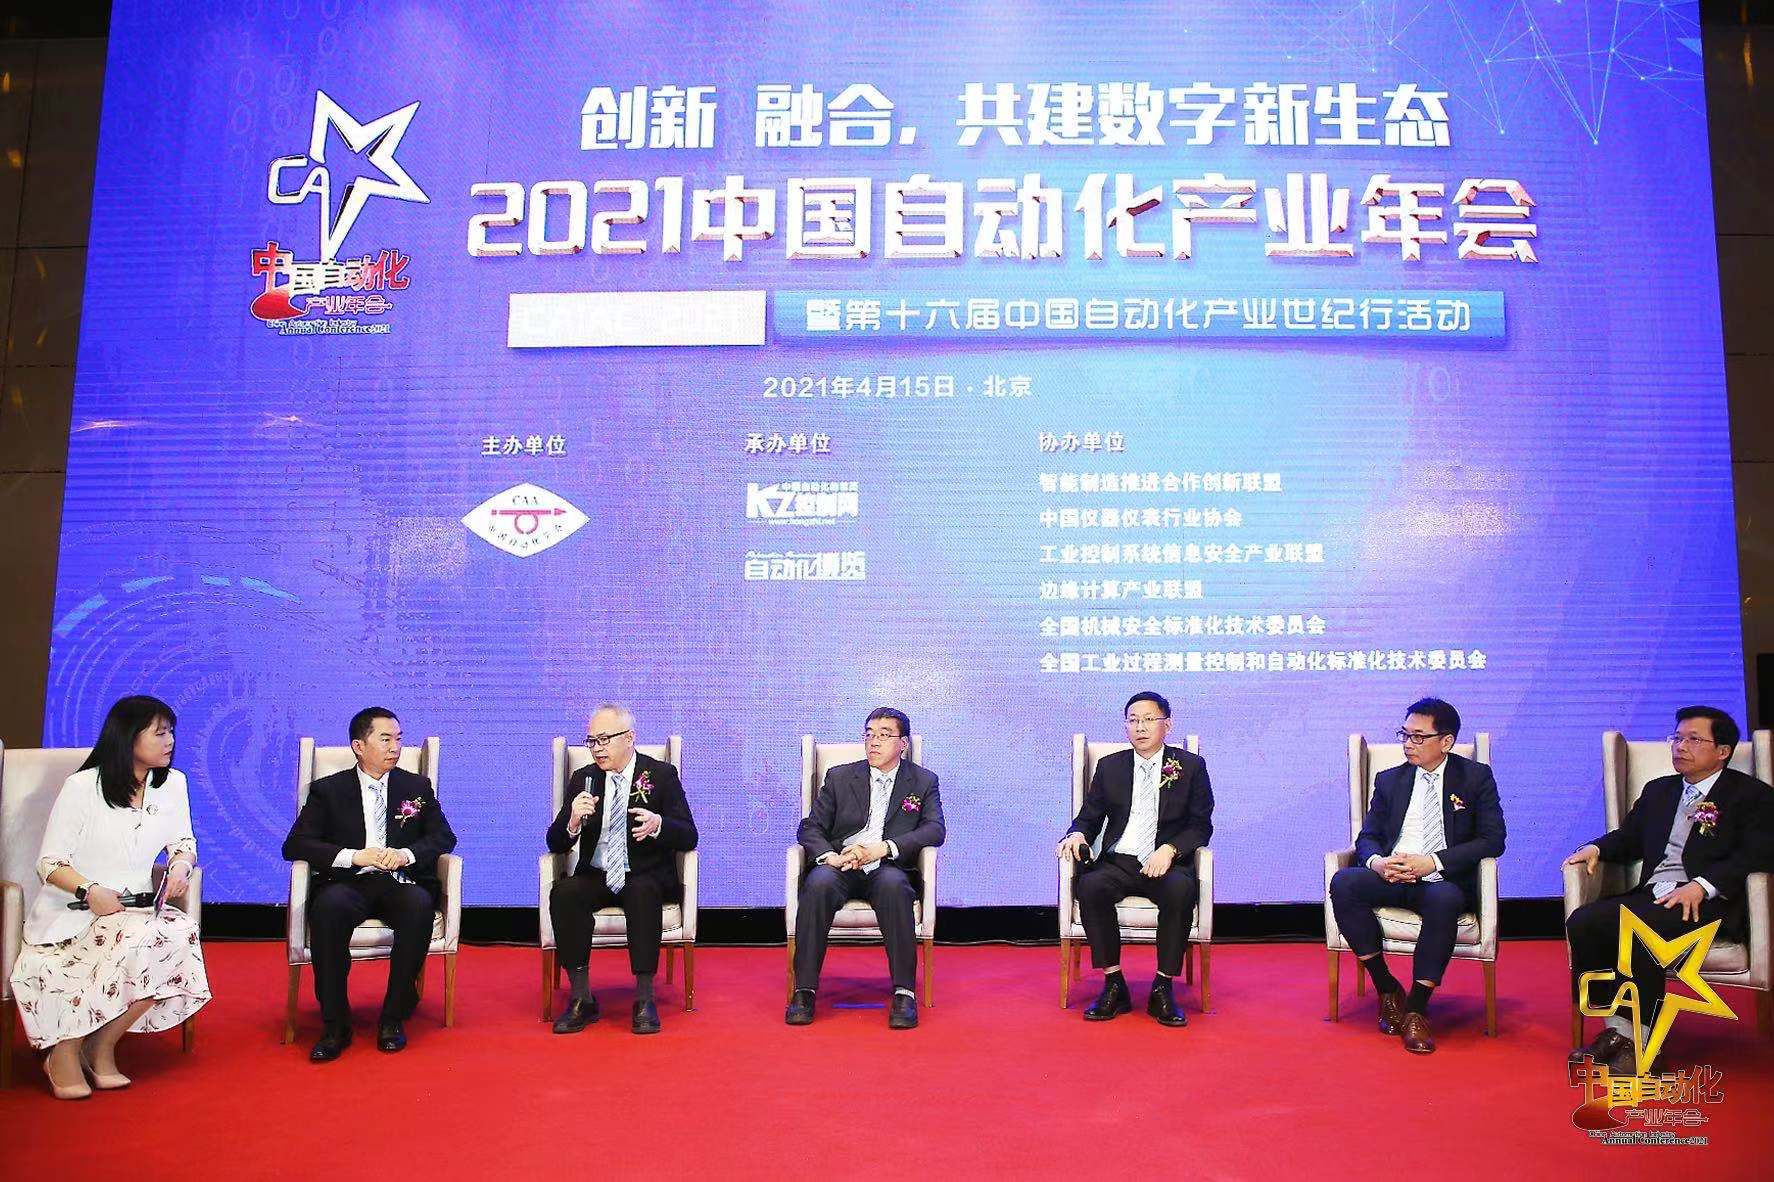 ABB中国过程自动化事业部负责人蒋海波(左三)在论坛上致辞